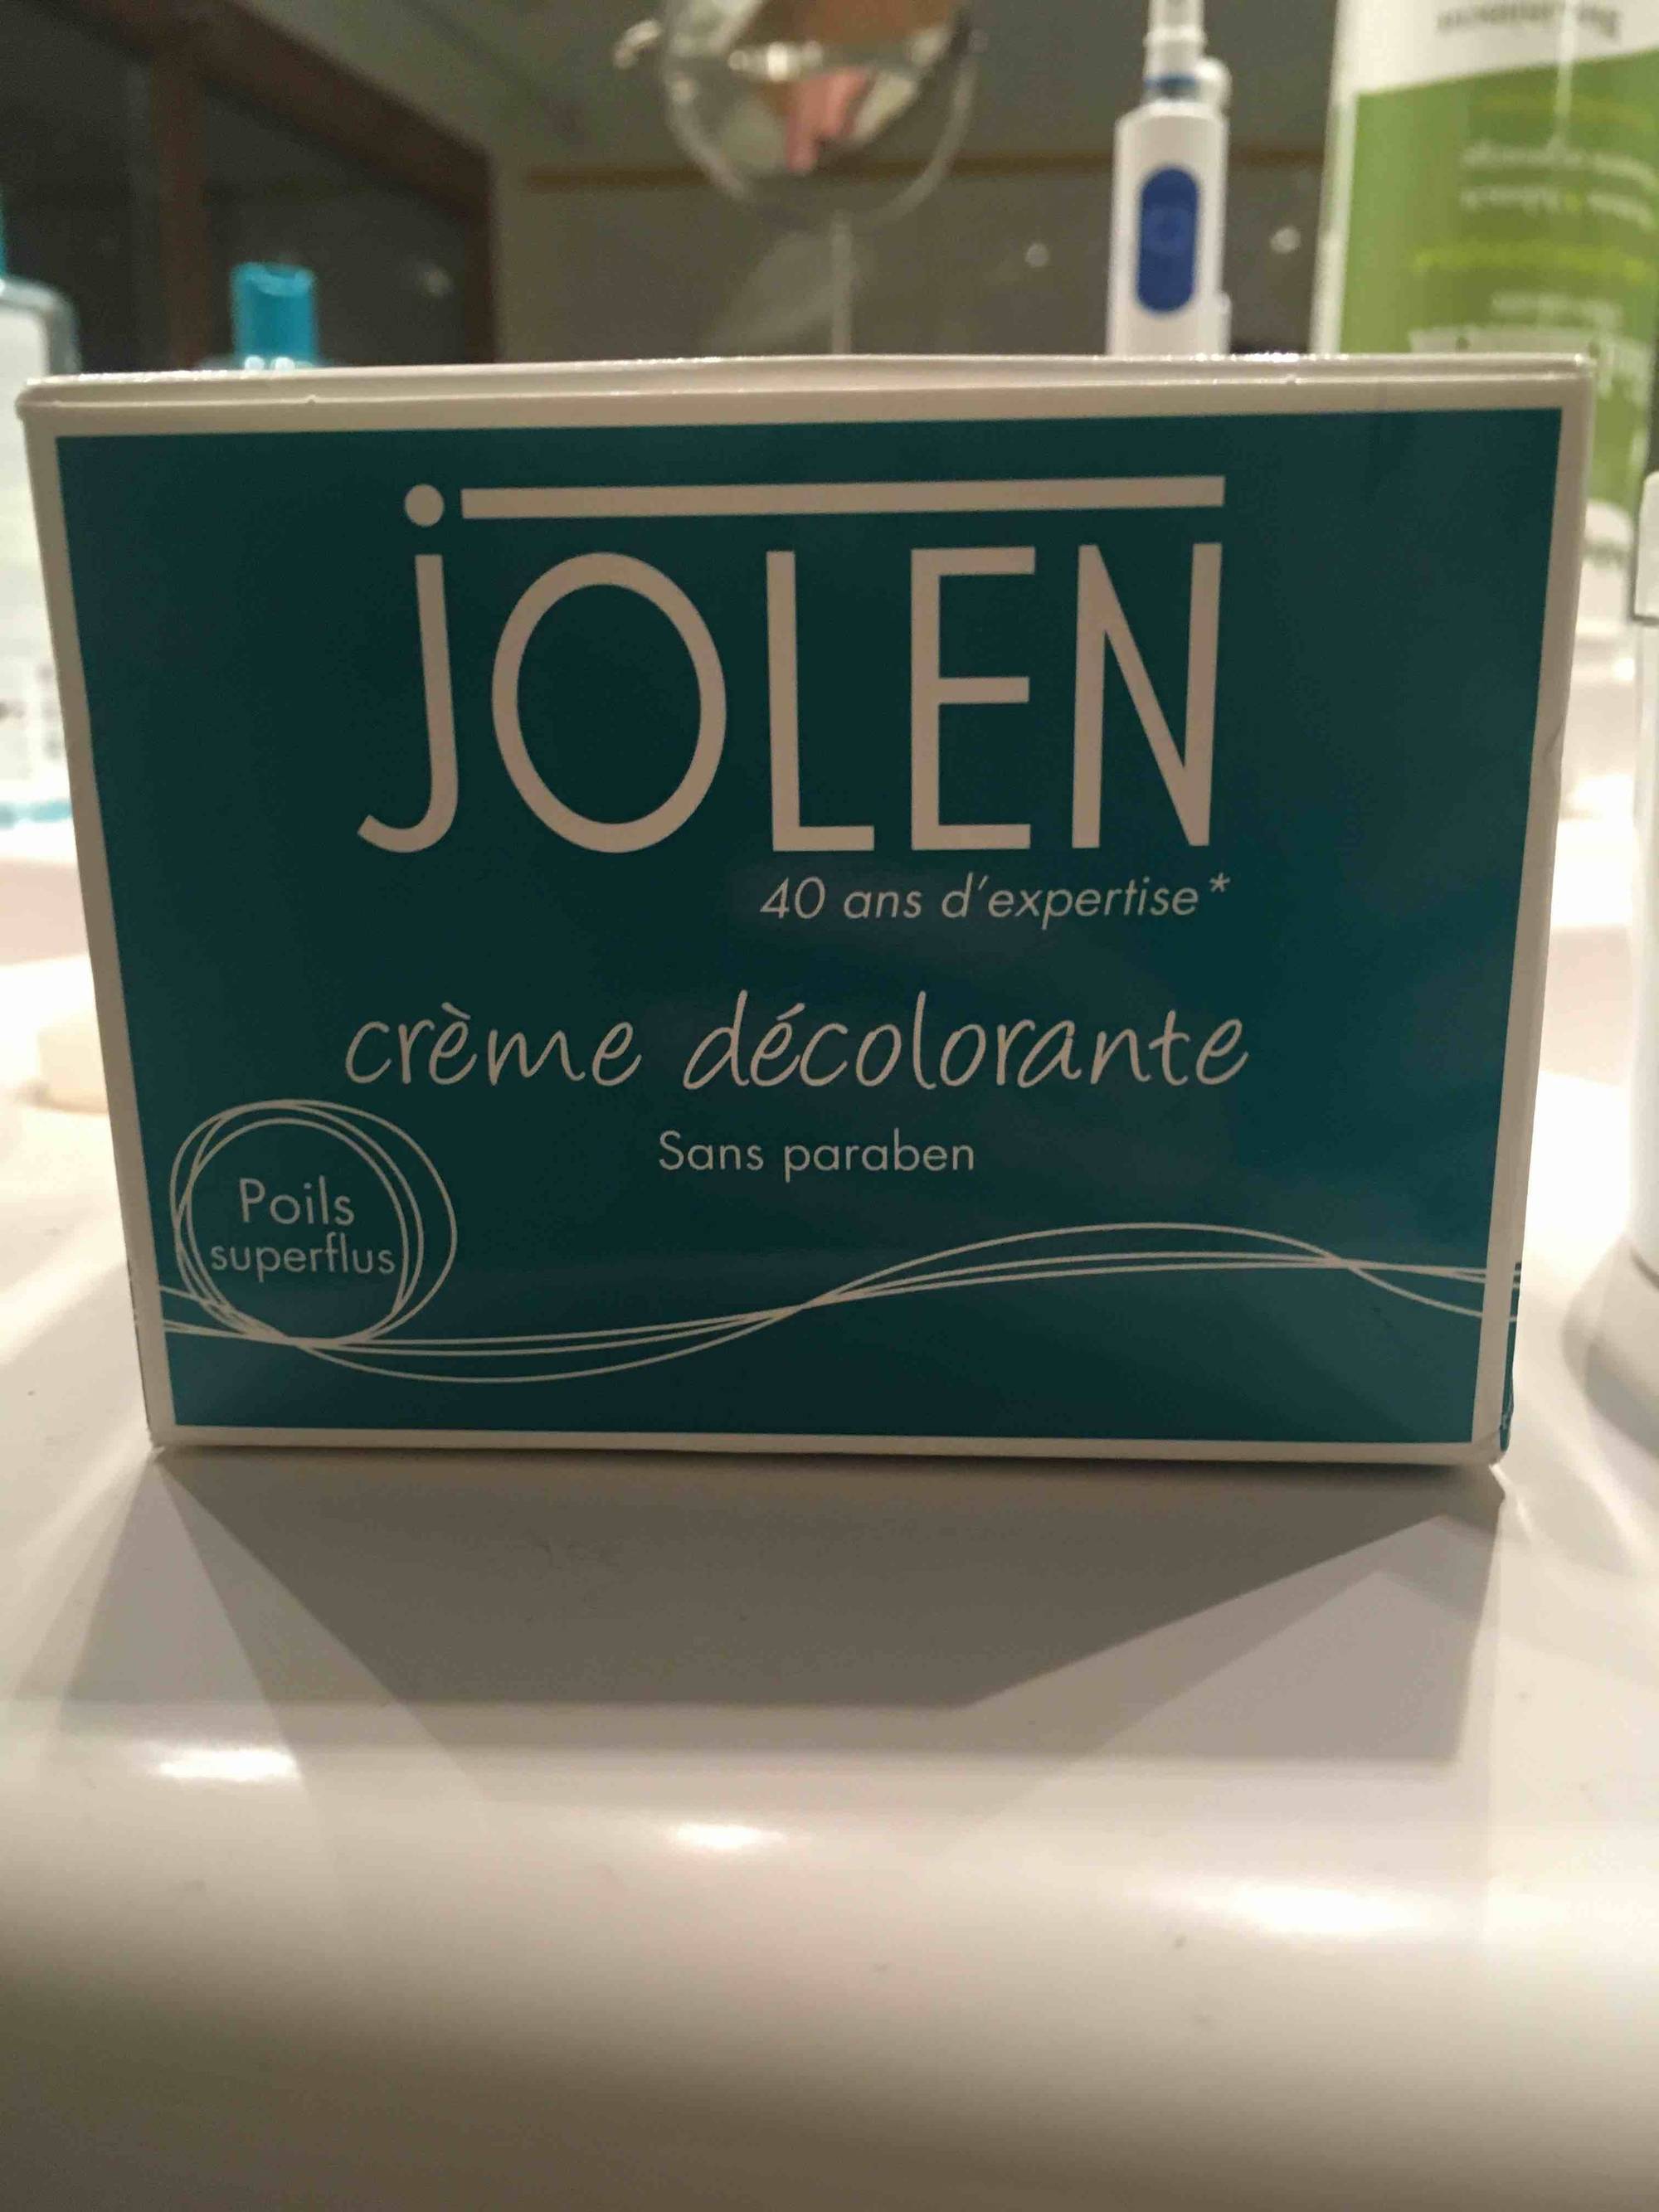 JOLEN - Crème décolorante - Poils superflus